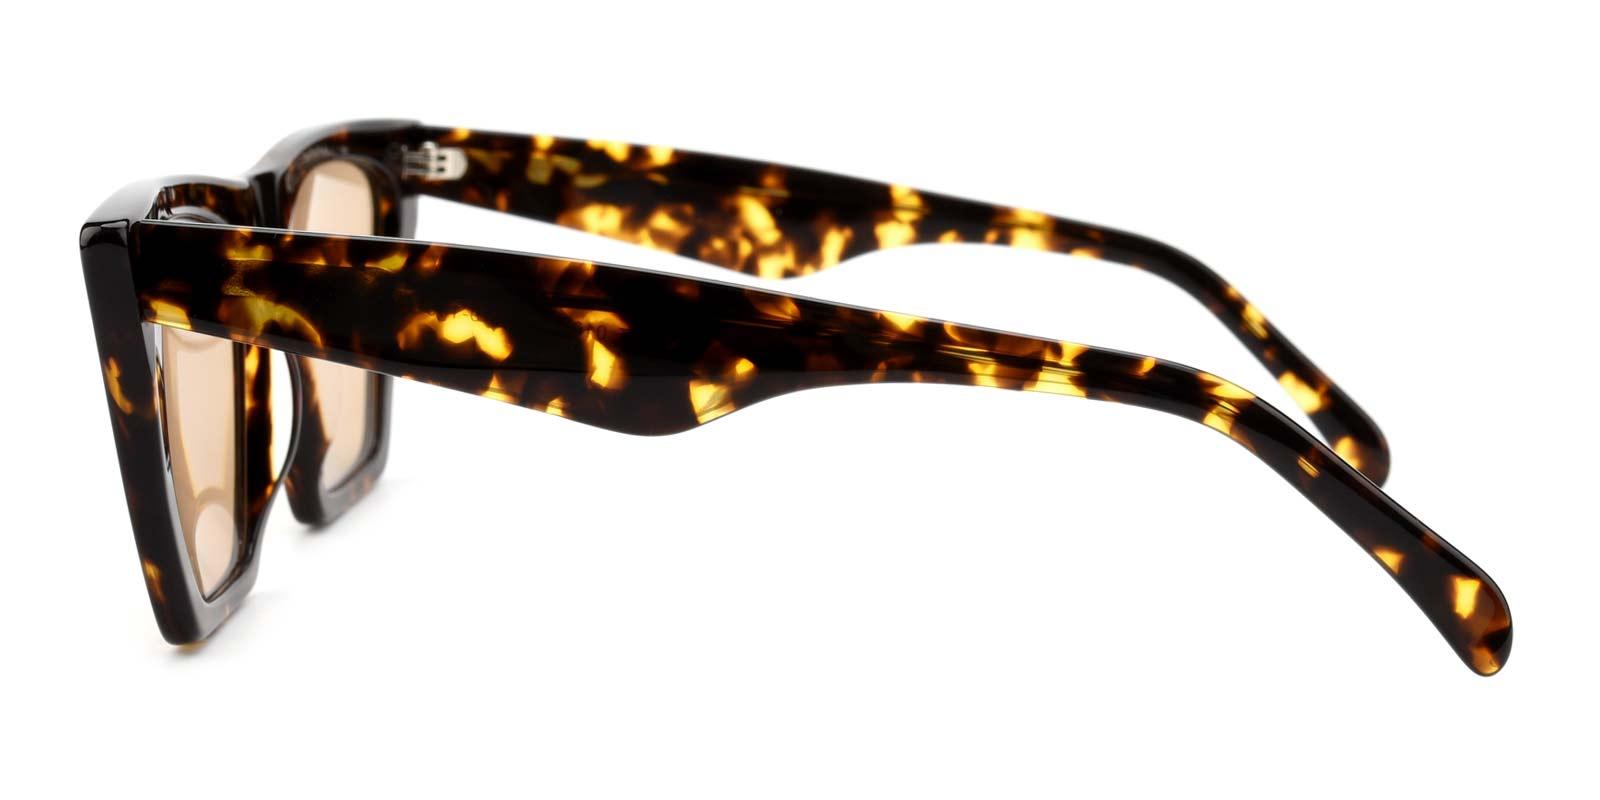 Alva-Tortoise-Cat-Acetate-Sunglasses-detail